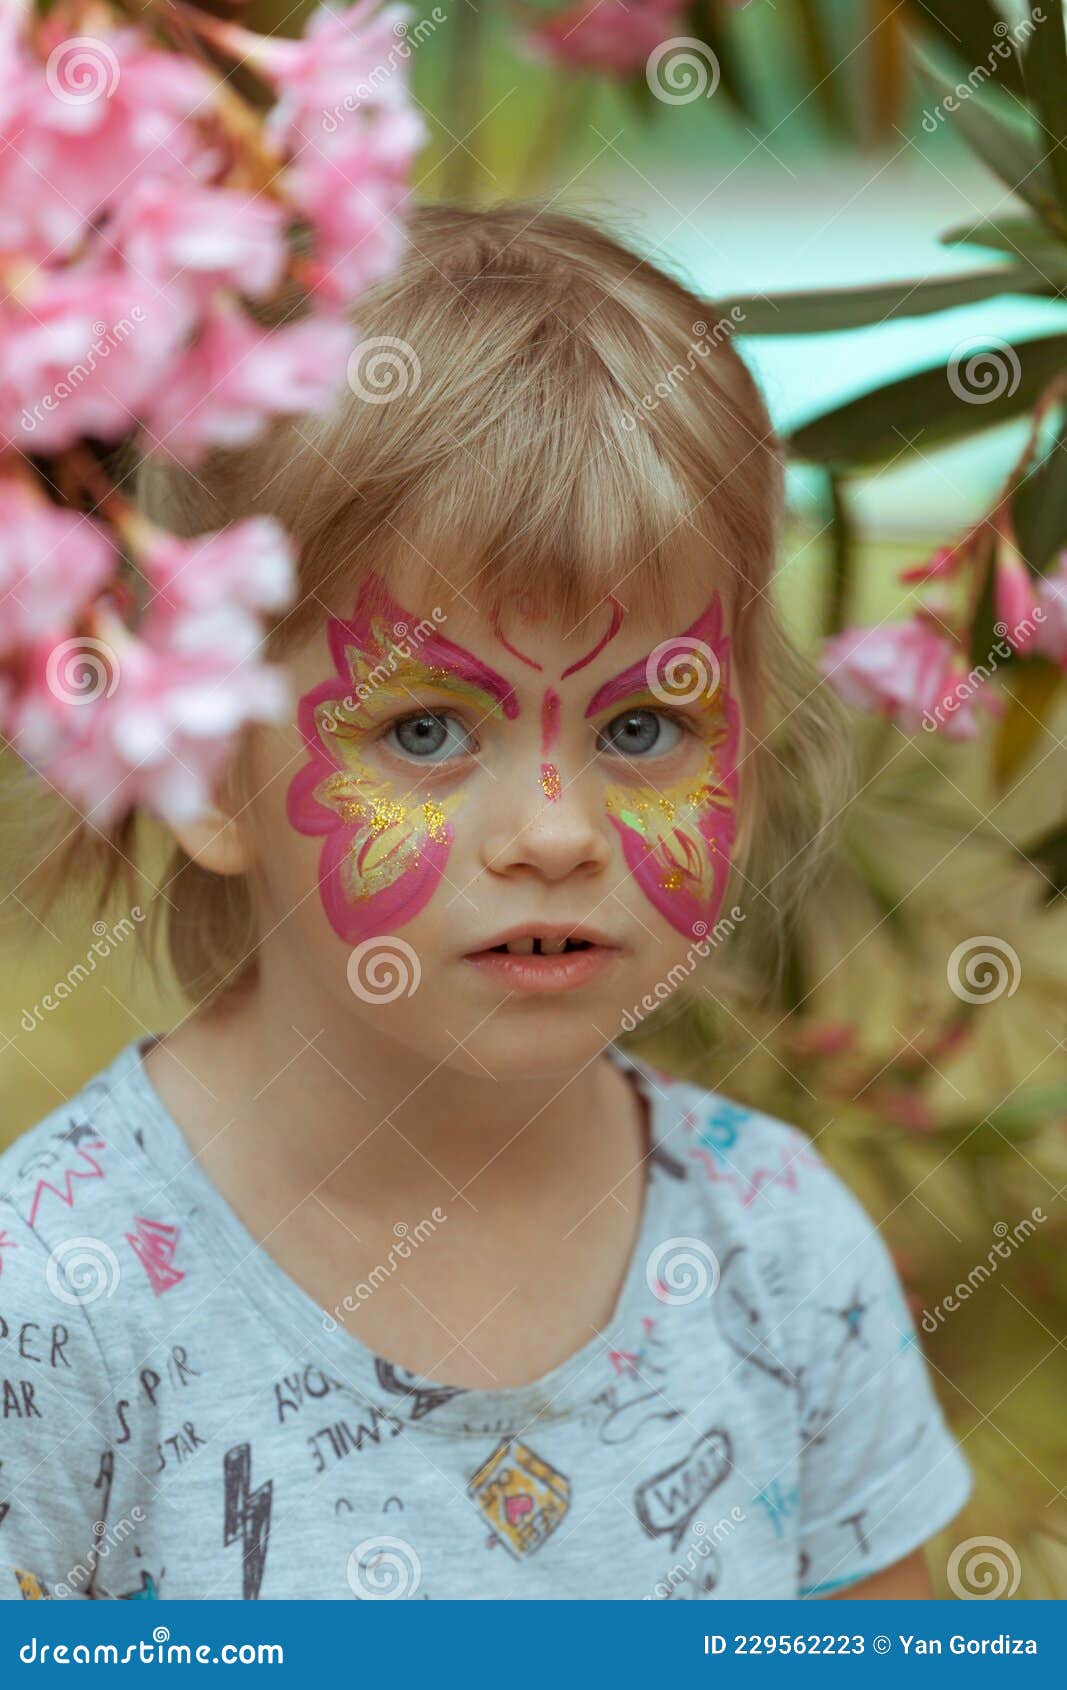 Maquillage Sur Le Visage De L'enfant. Papillon Pour Les Vacances Image  stock - Image du émotion, paume: 229562223